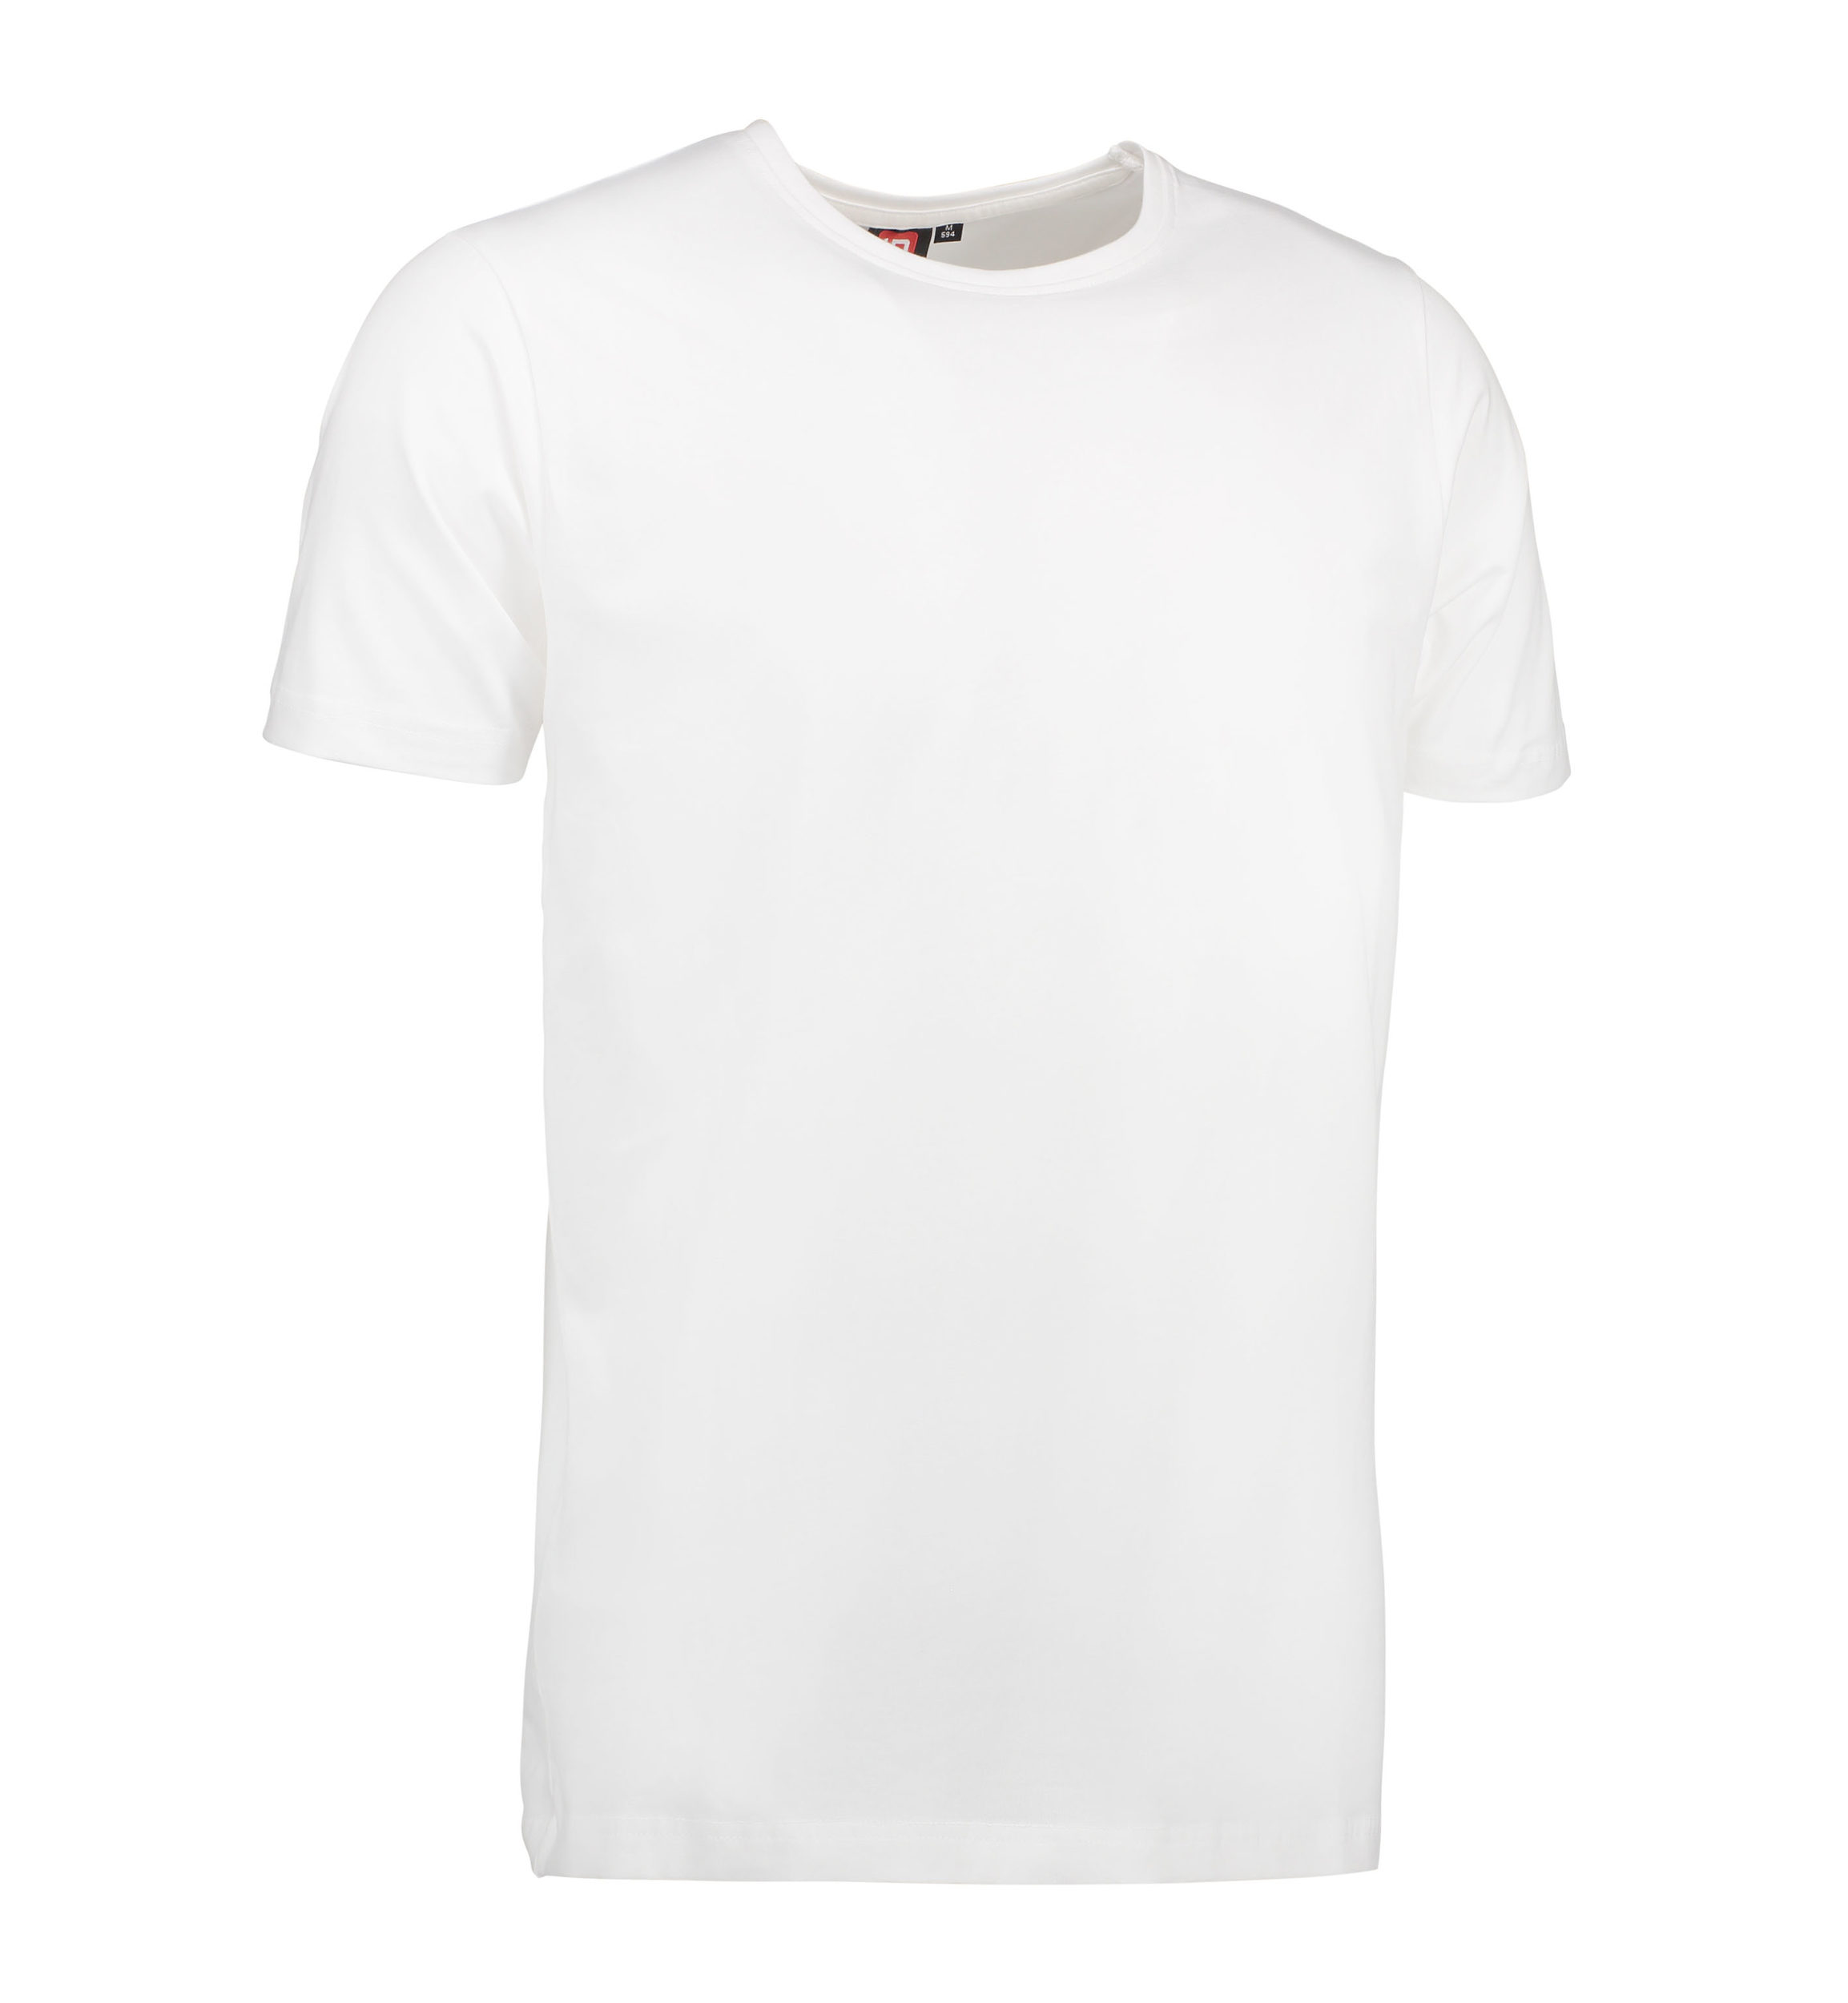 Billede af Stretch t-shirt til mænd i hvid - XL hos Sygeplejebutikken.dk